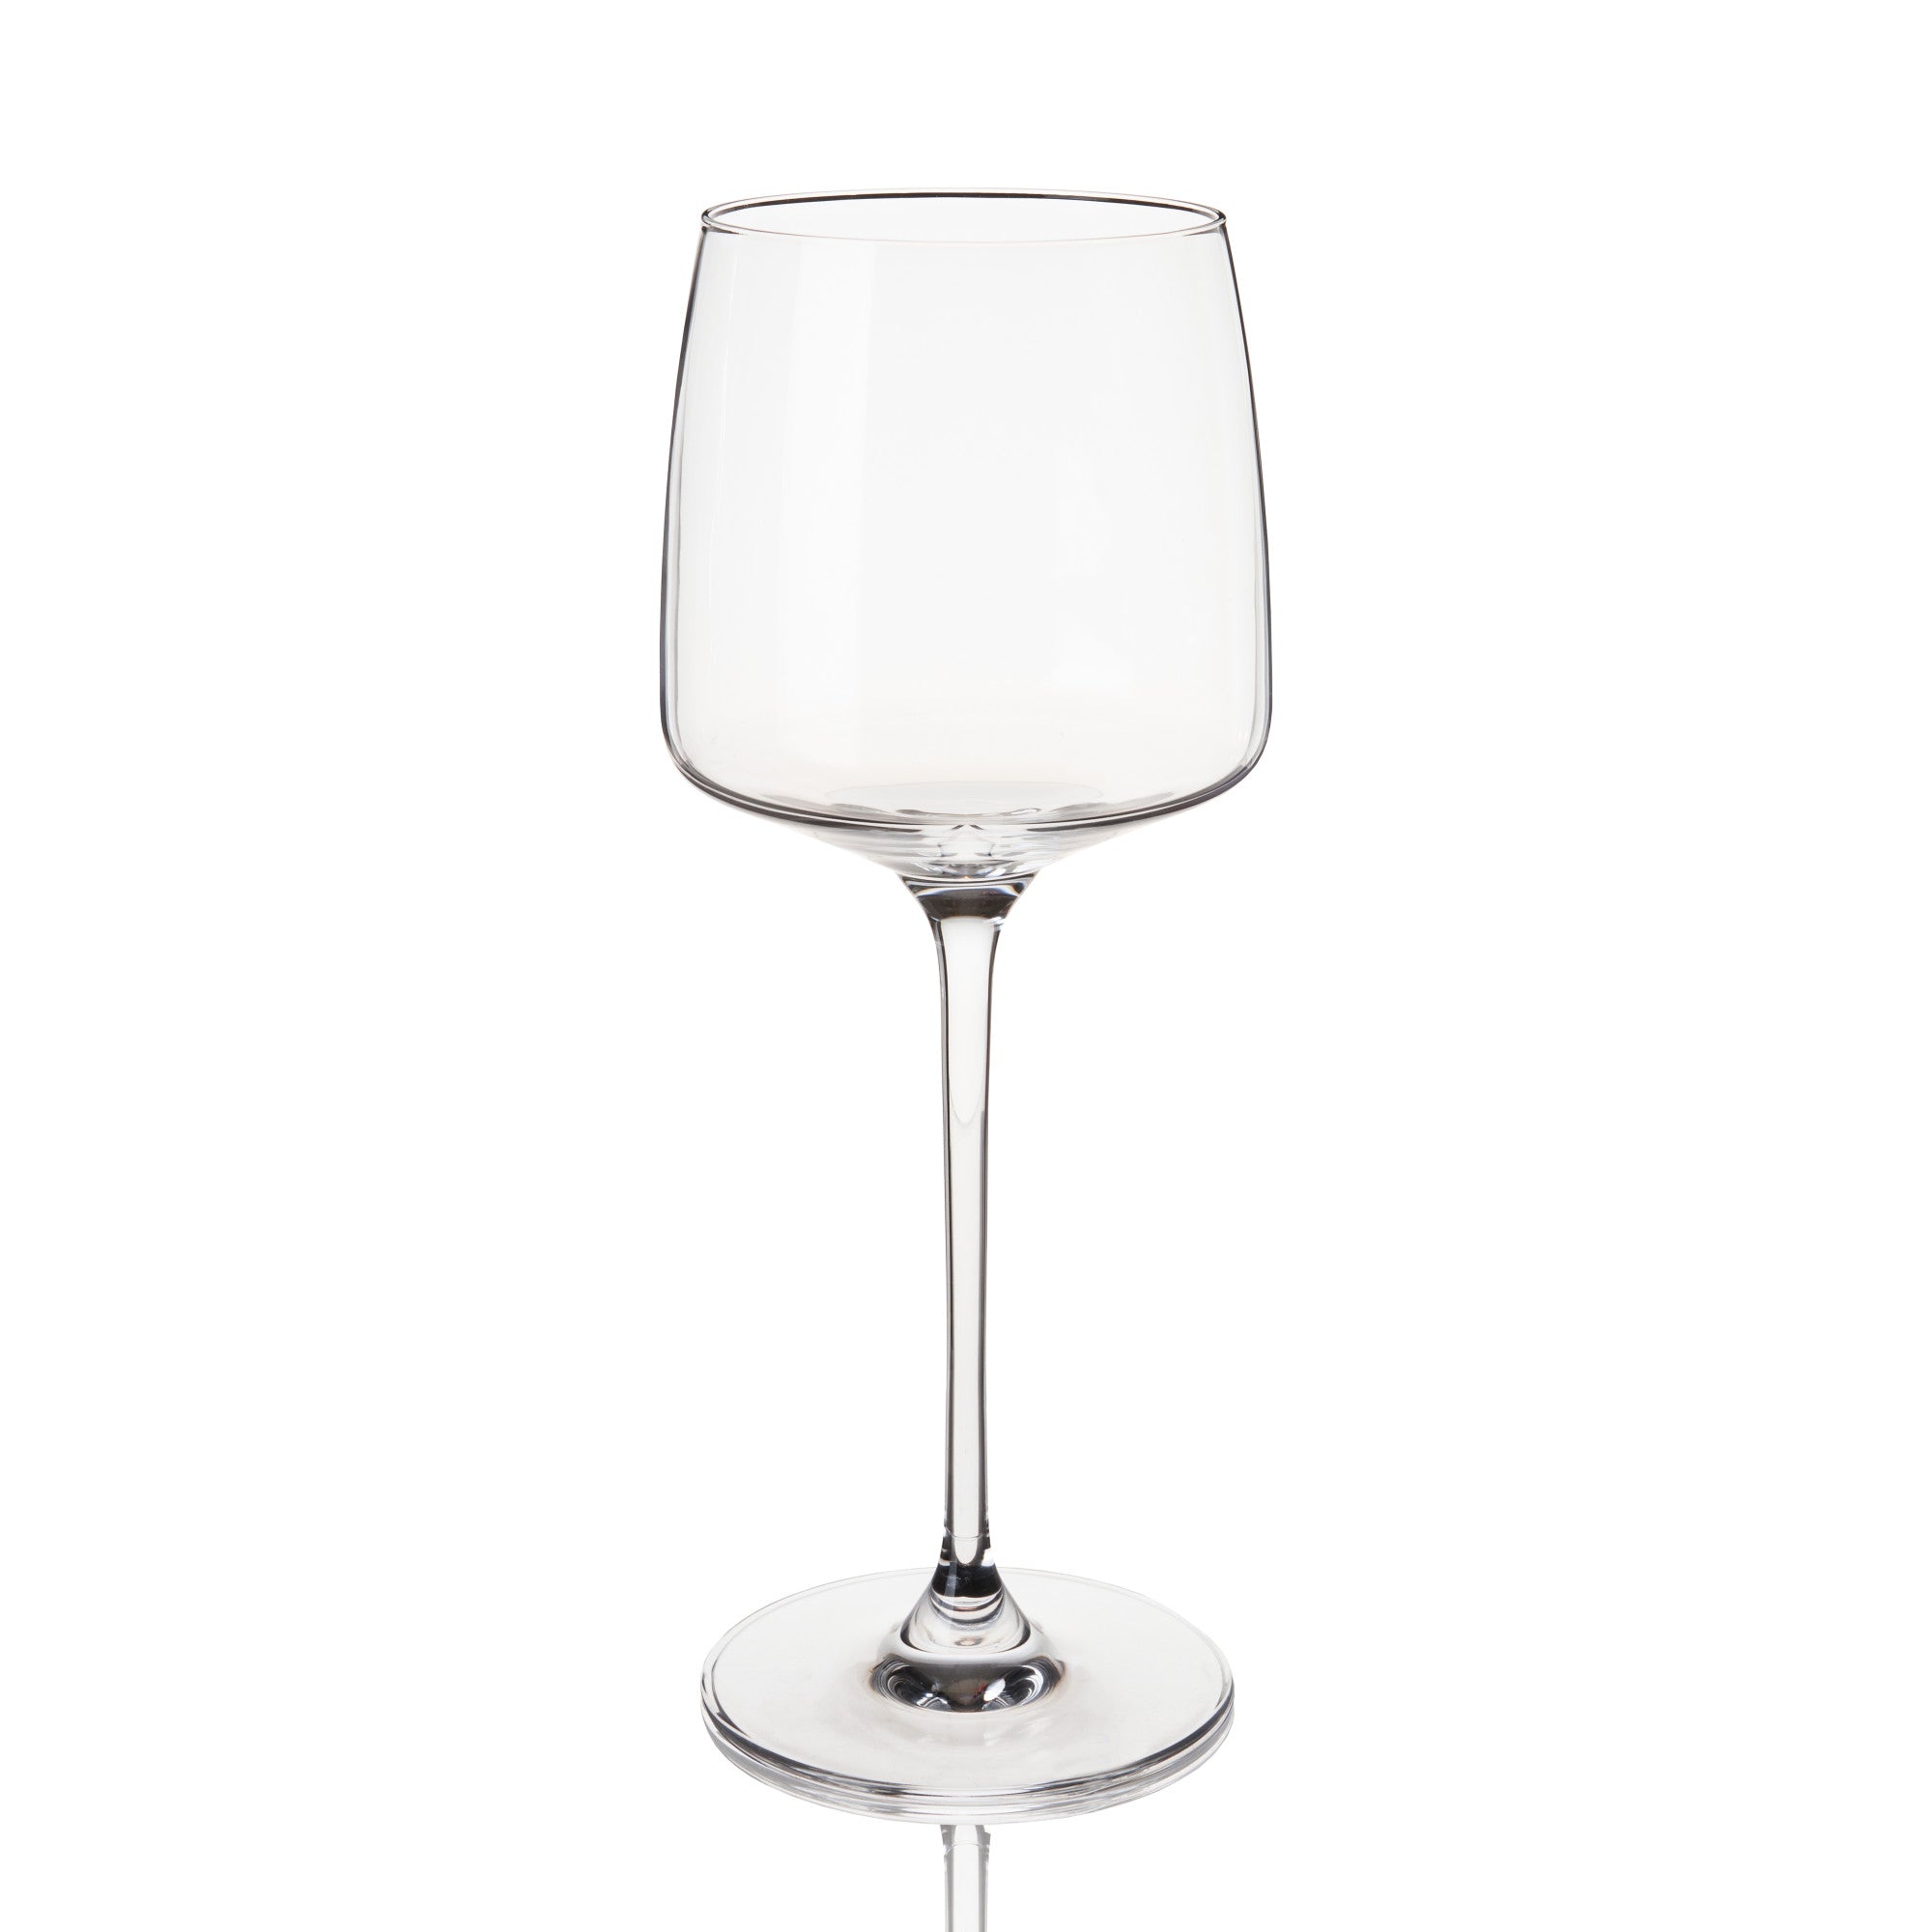 Reserve Julien Crystal Chardonnay Glasses By Viski (Set of 4)